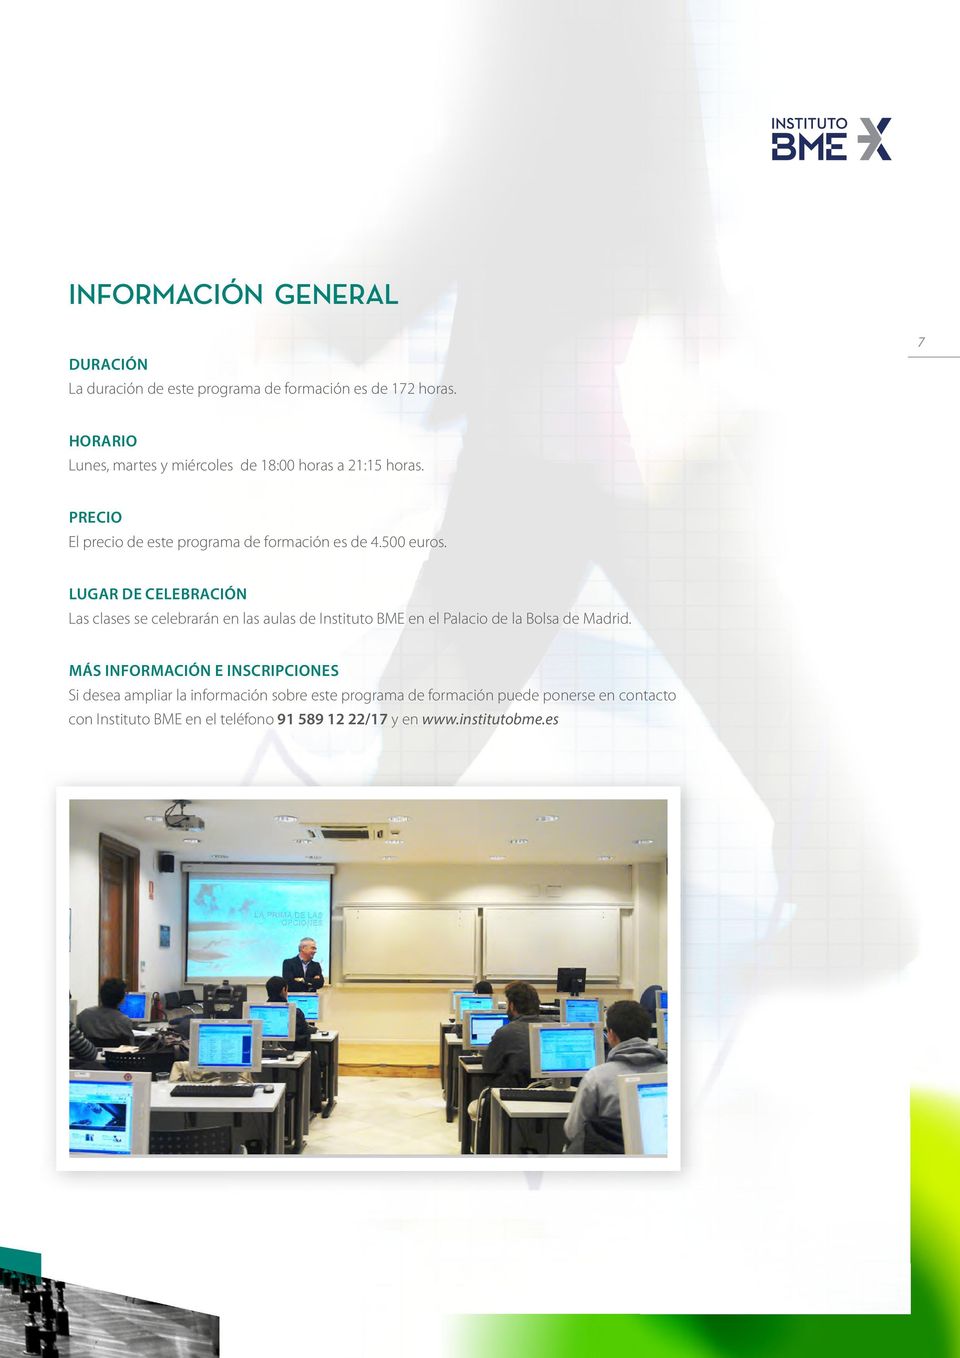 LUGAR DE CELEBRACIÓN Las clases se celebrarán en las aulas de Instituto BME en el Palacio de la Bolsa de Madrid.